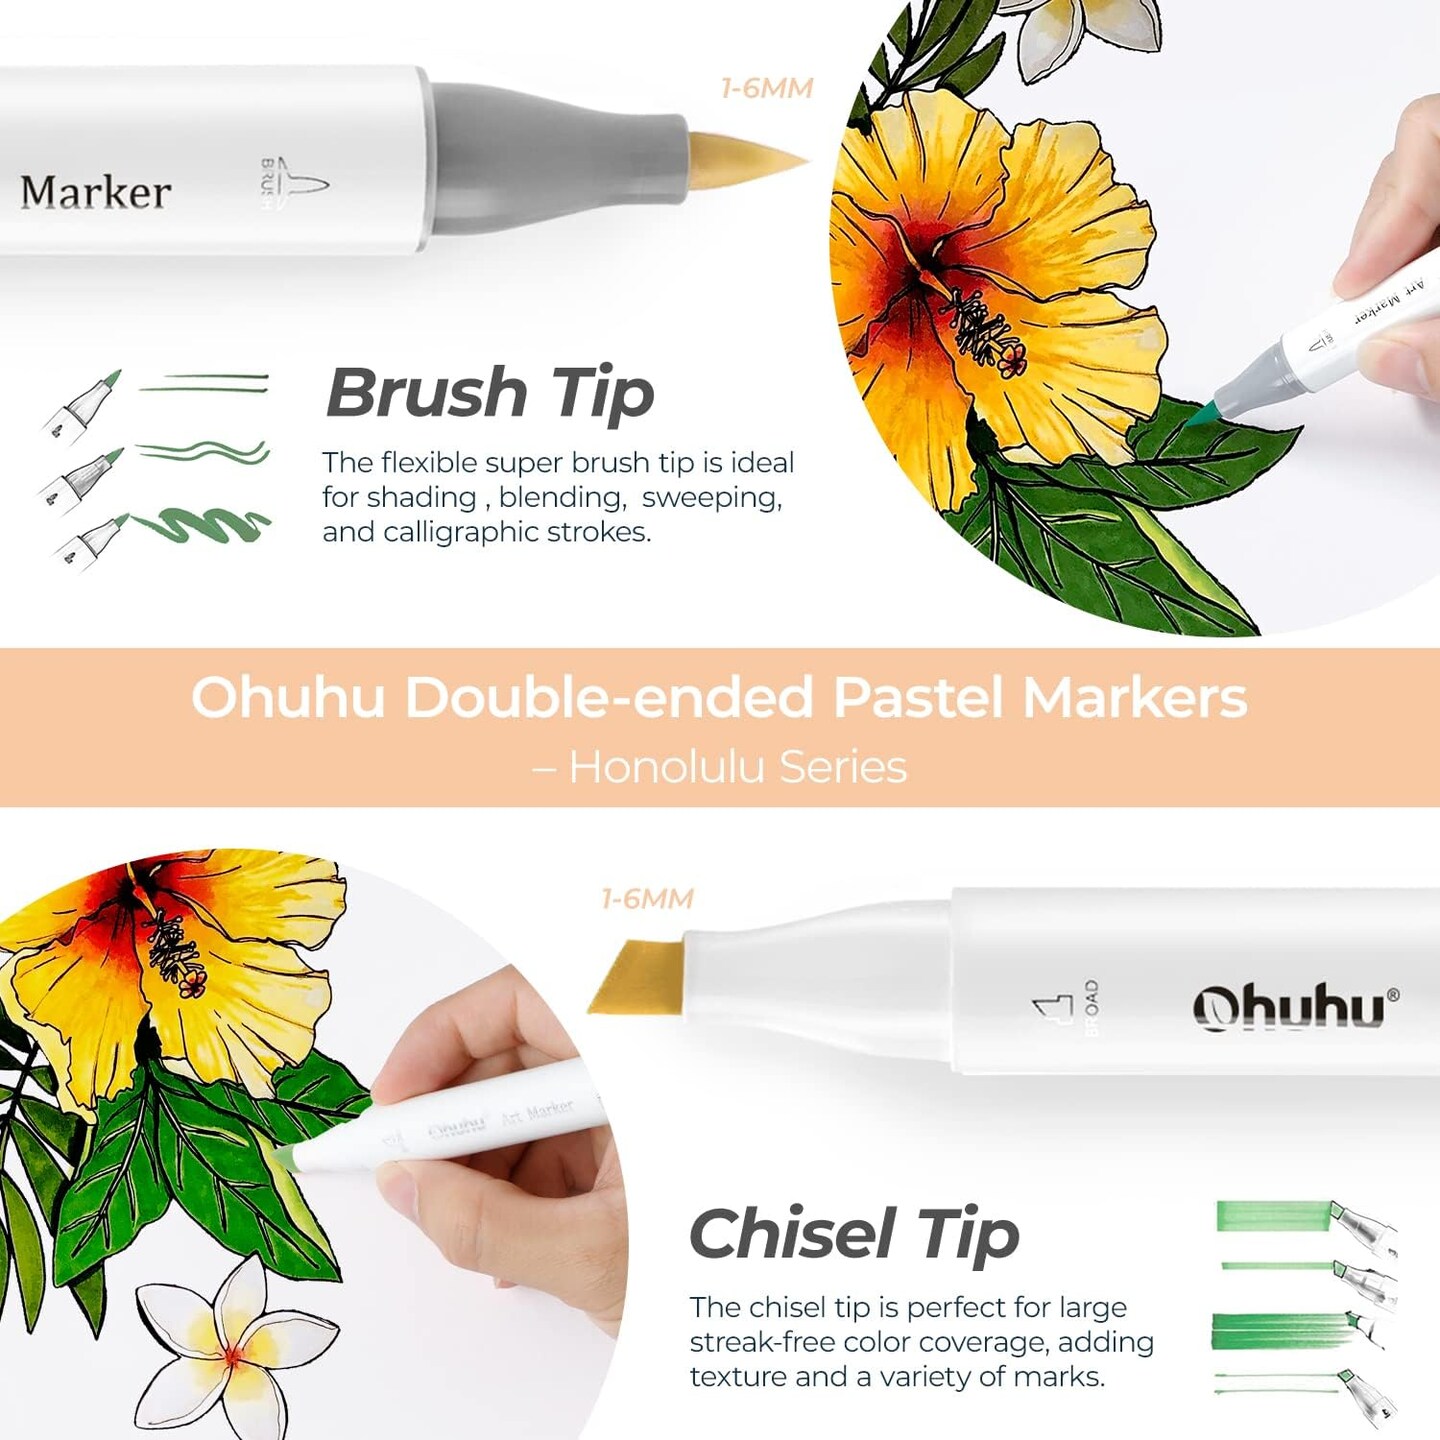 NEW Ohuhu PASTEL Markers Review [FREE Ohuhu Swatch Chart]